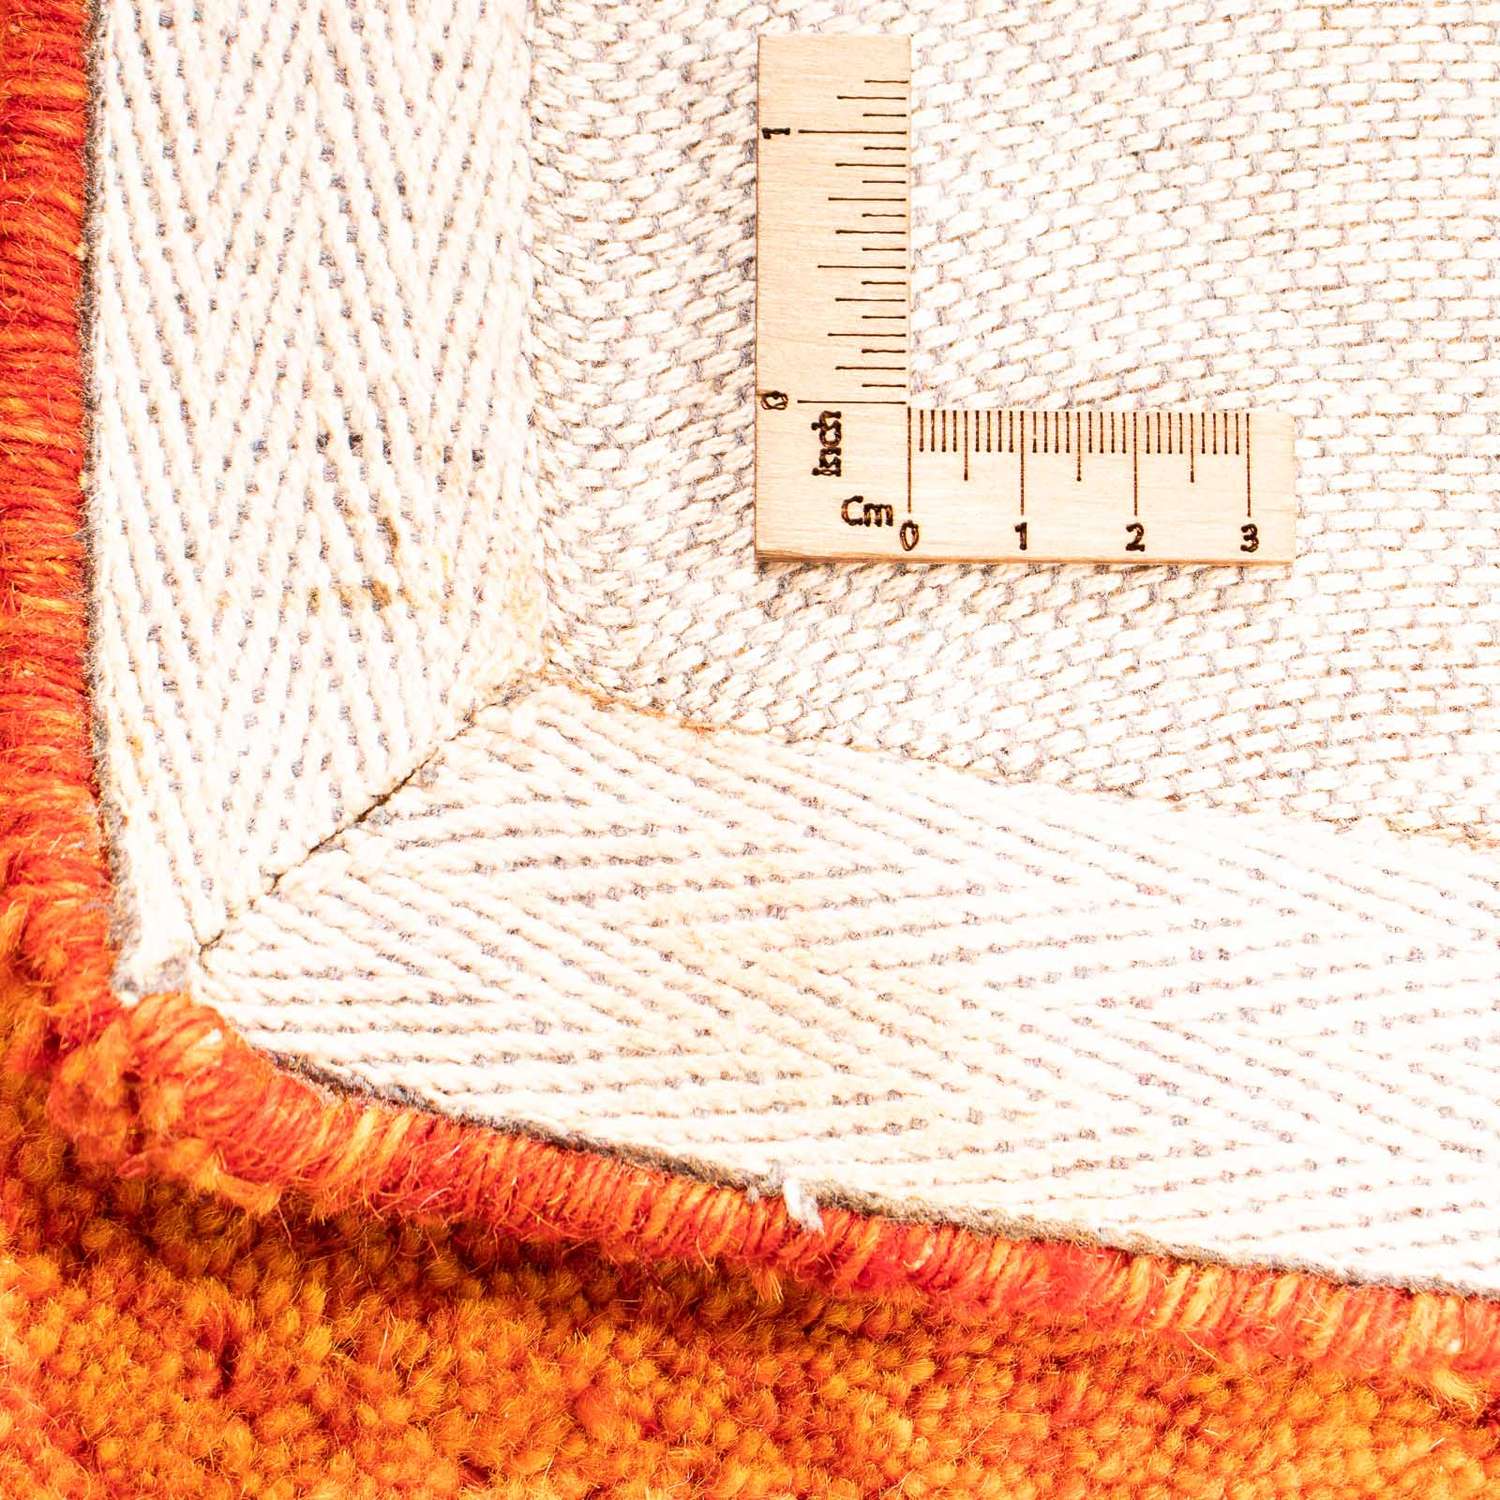 Vlněný koberec - 225 x 162 cm - oranžová